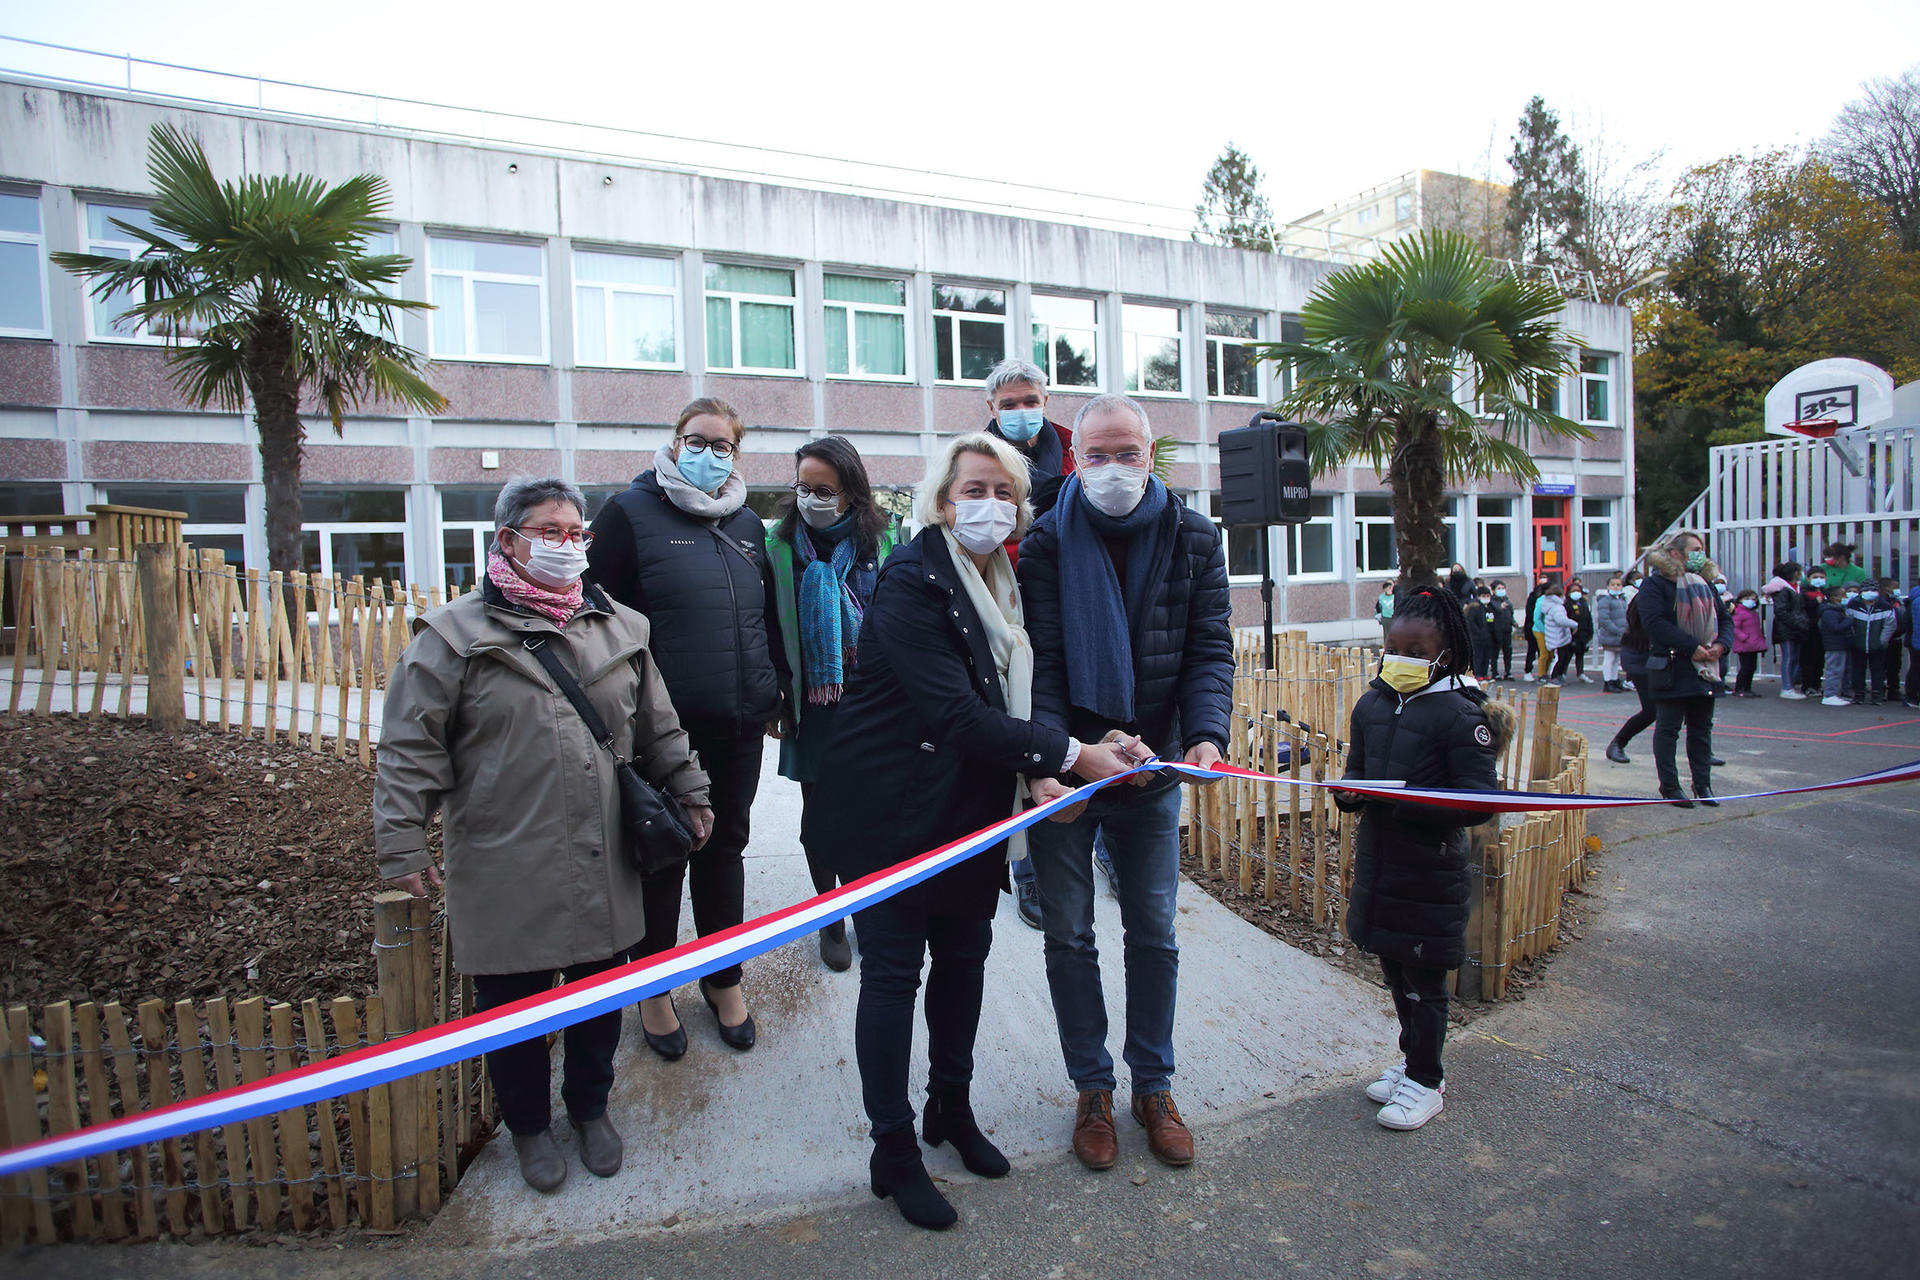 Inauguration des travaux de végétalisation effectués sur l’école de kerjestin à Penhars/Kermoysan en présence de Mme la maire.